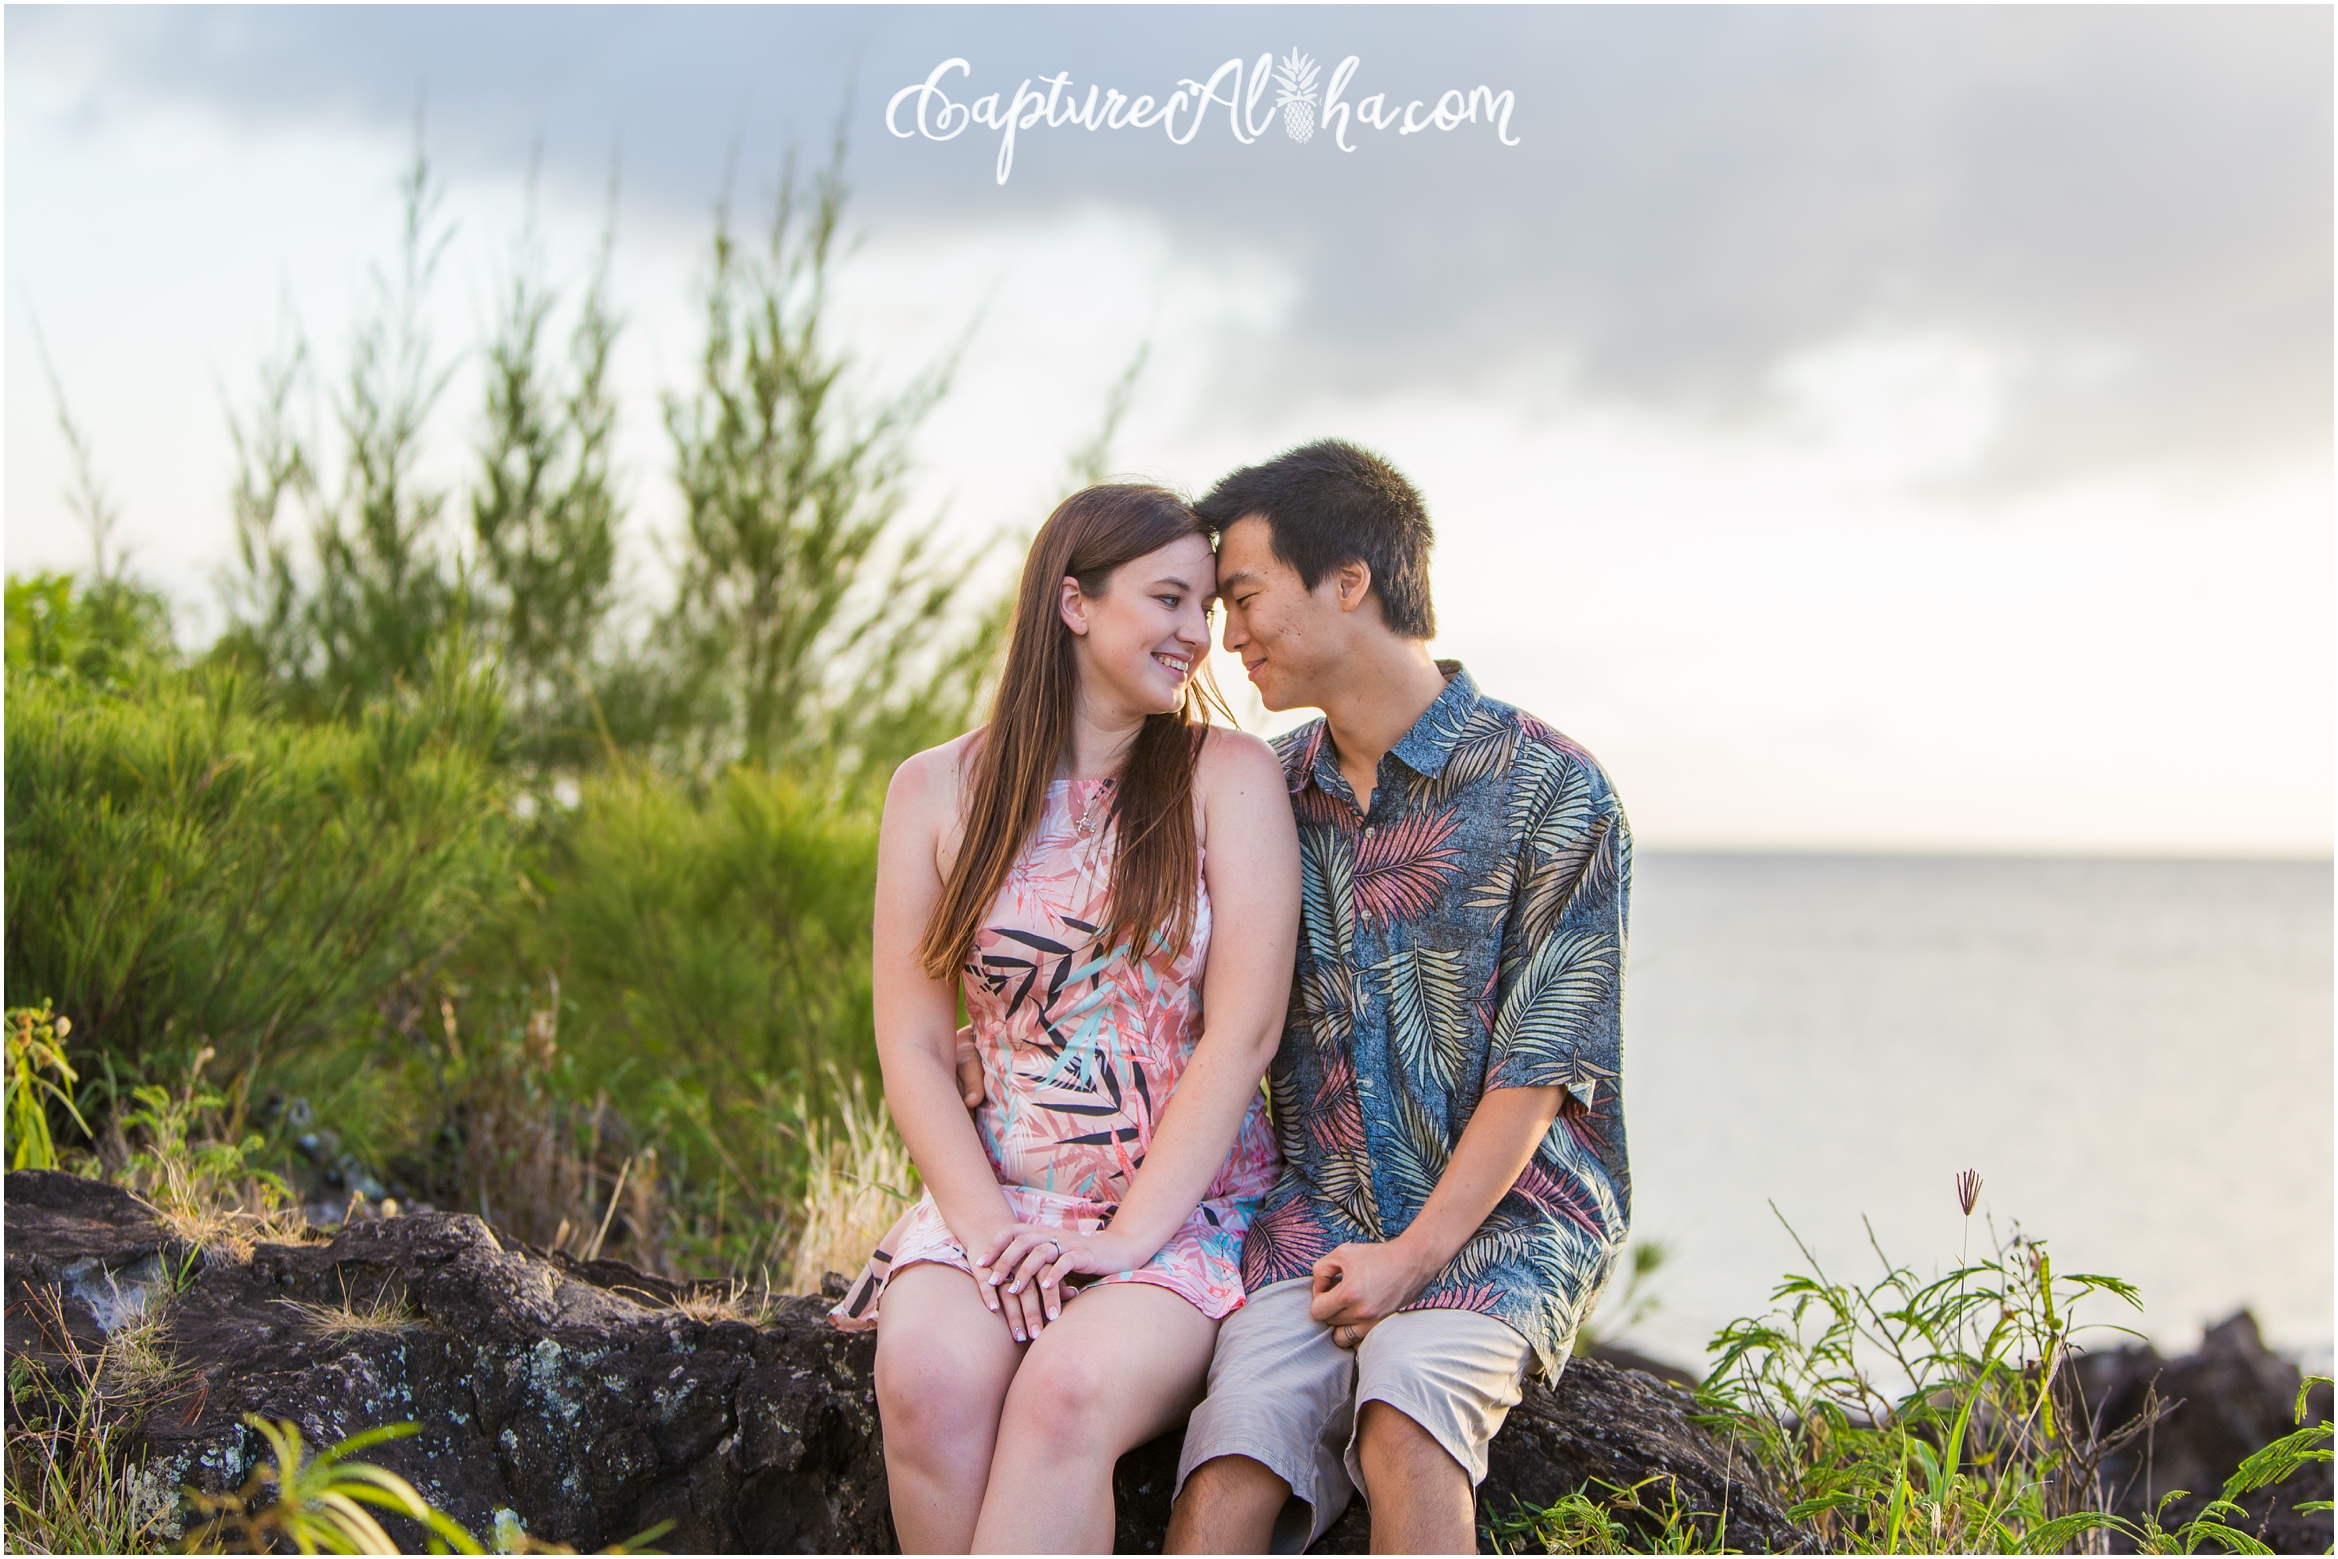 Maui Couples Photography at Kapalua Bay at Sunset